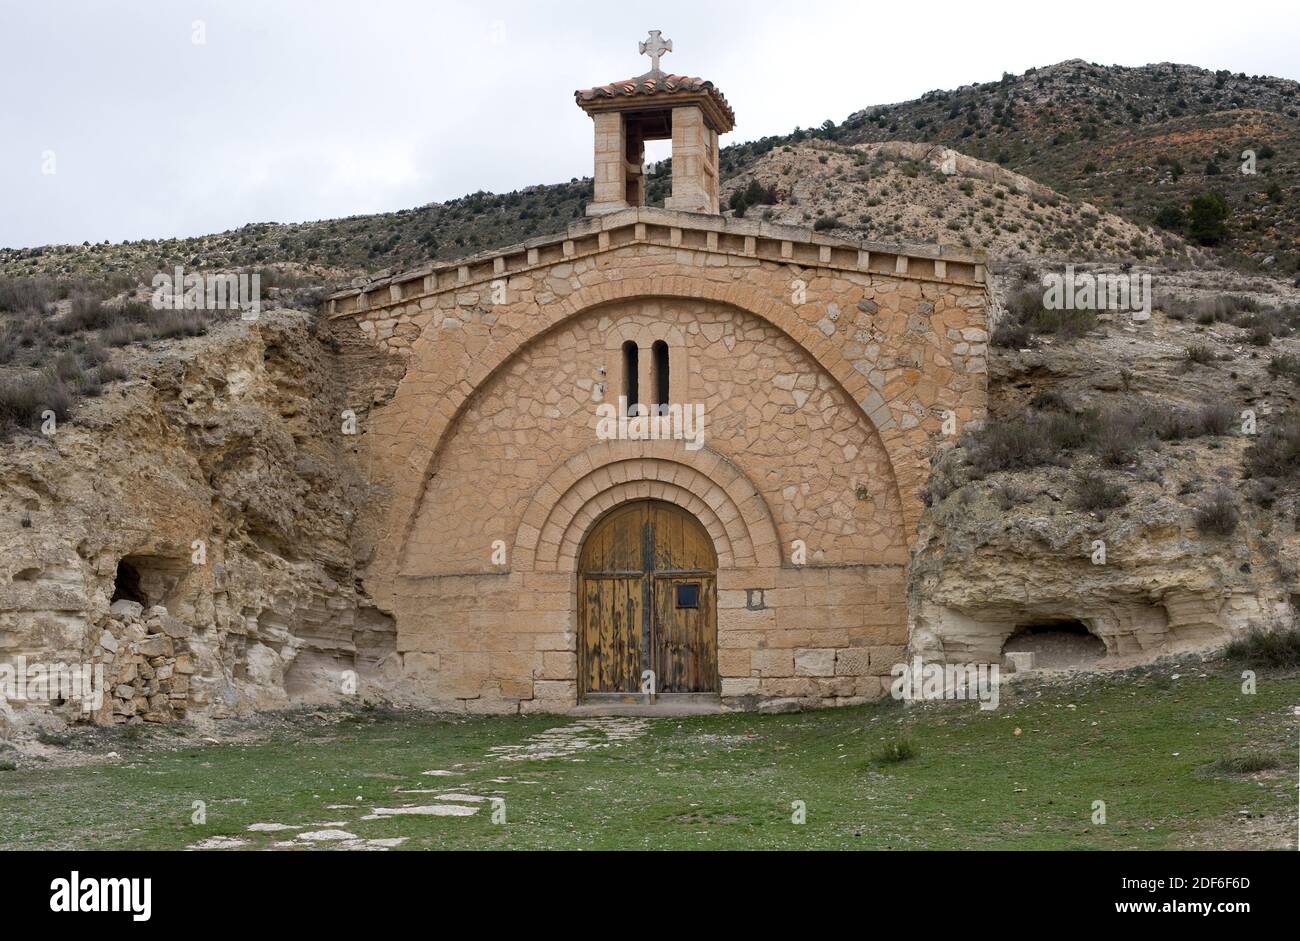 Libros old mining town (La Azufrera) troglodyte church. Teruel province, Aragon, Spain. Stock Photo